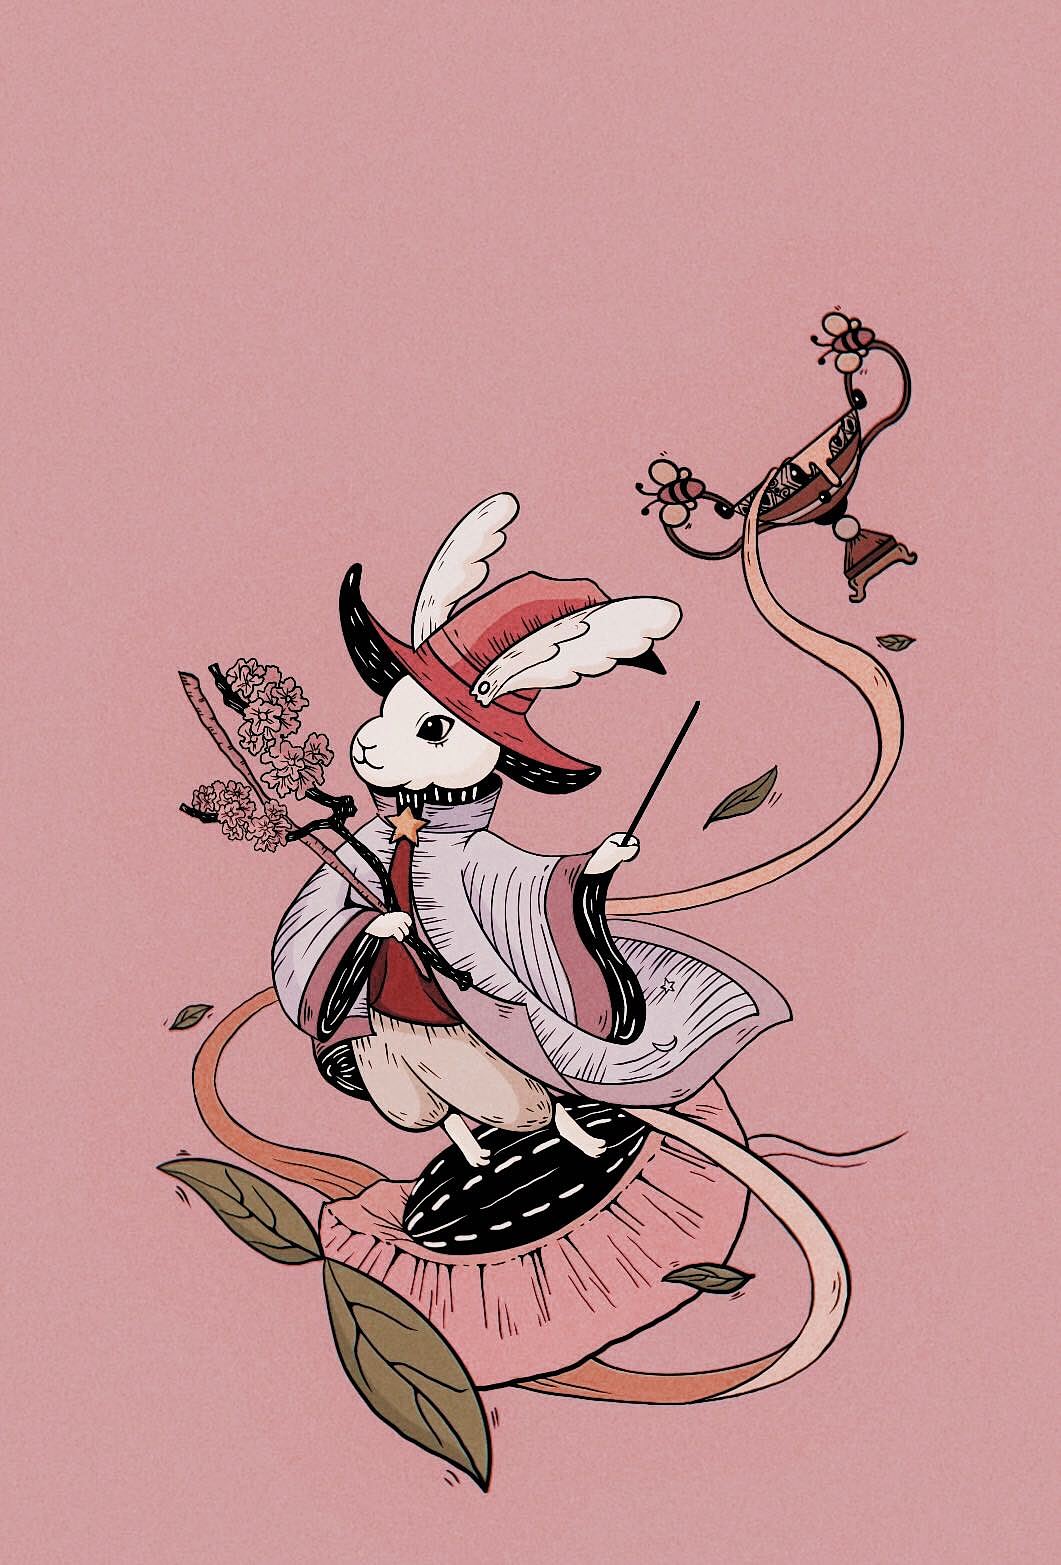 baec画师画的兔子图片